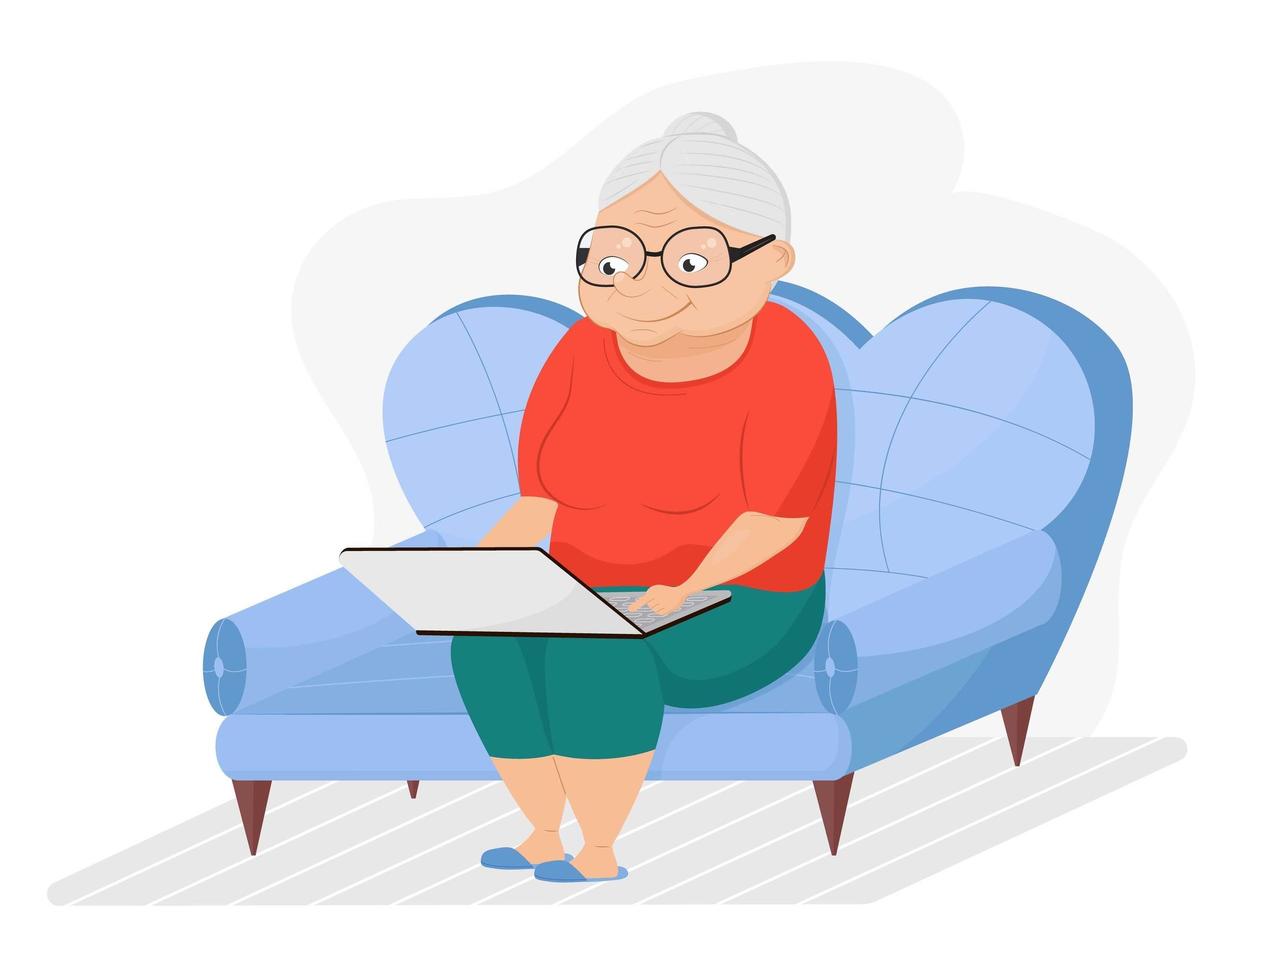 la nonna è seduta sul divano con il laptop. la donna anziana sveglia del fumetto sta navigando in internet. vettore